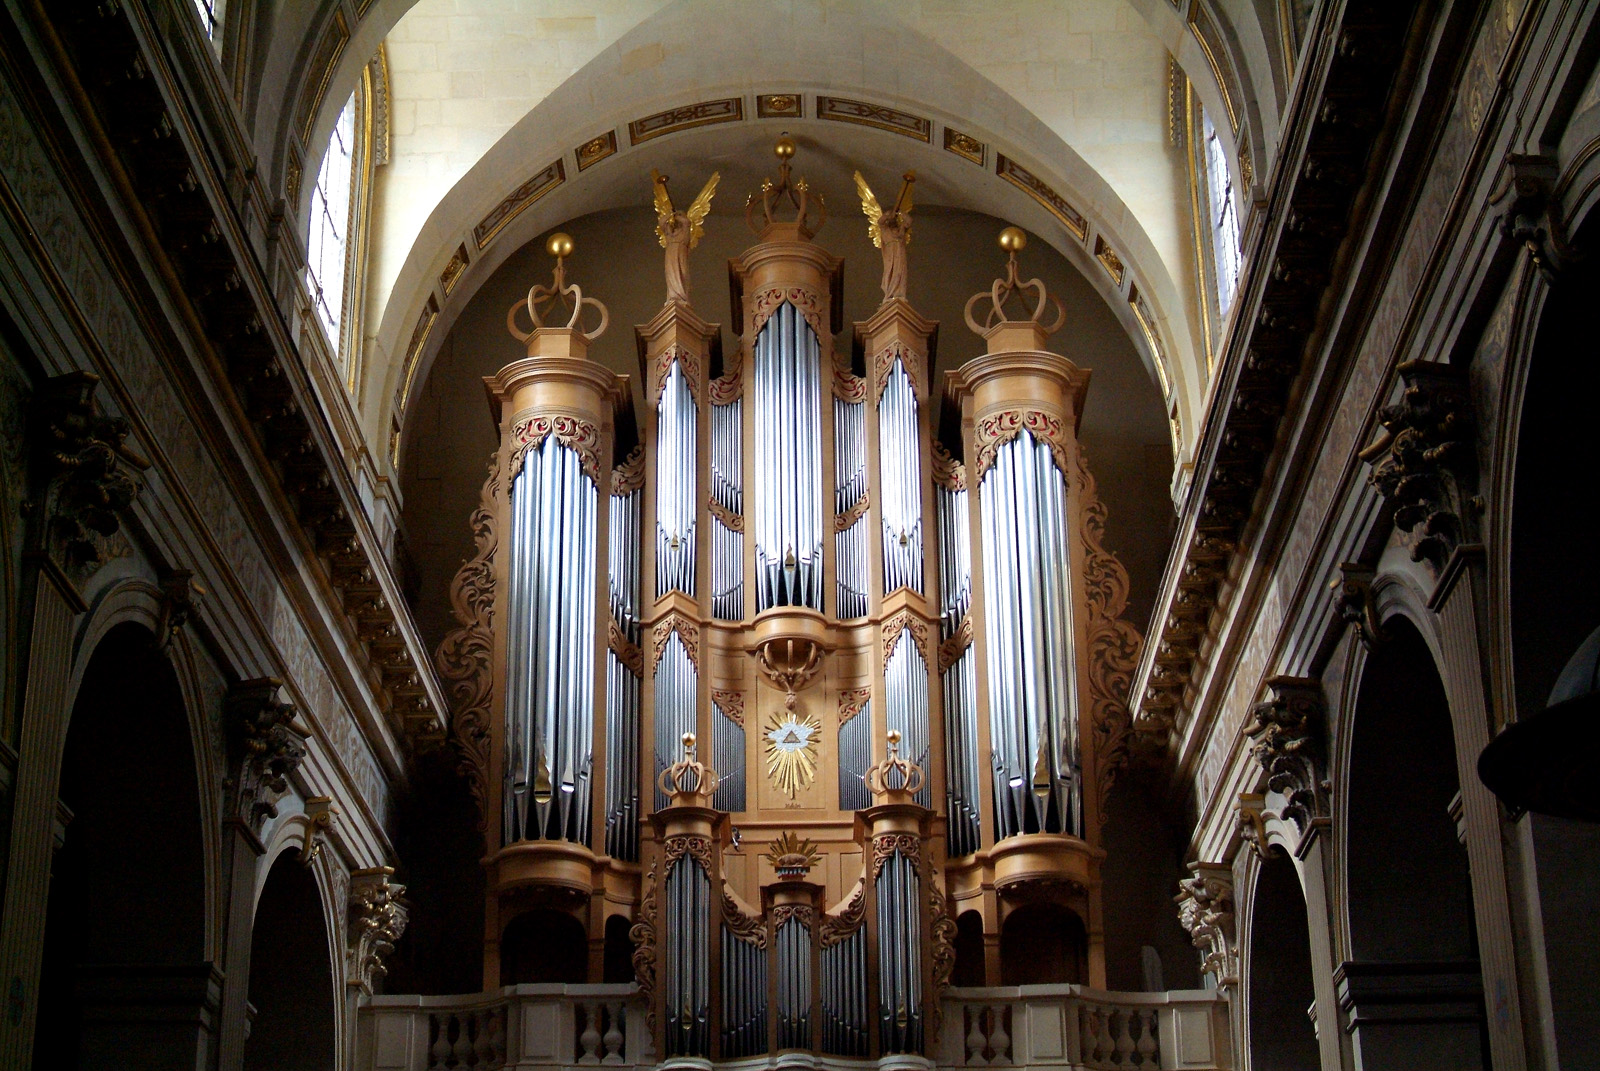 Golden Angles Organ in St. Louis en lile